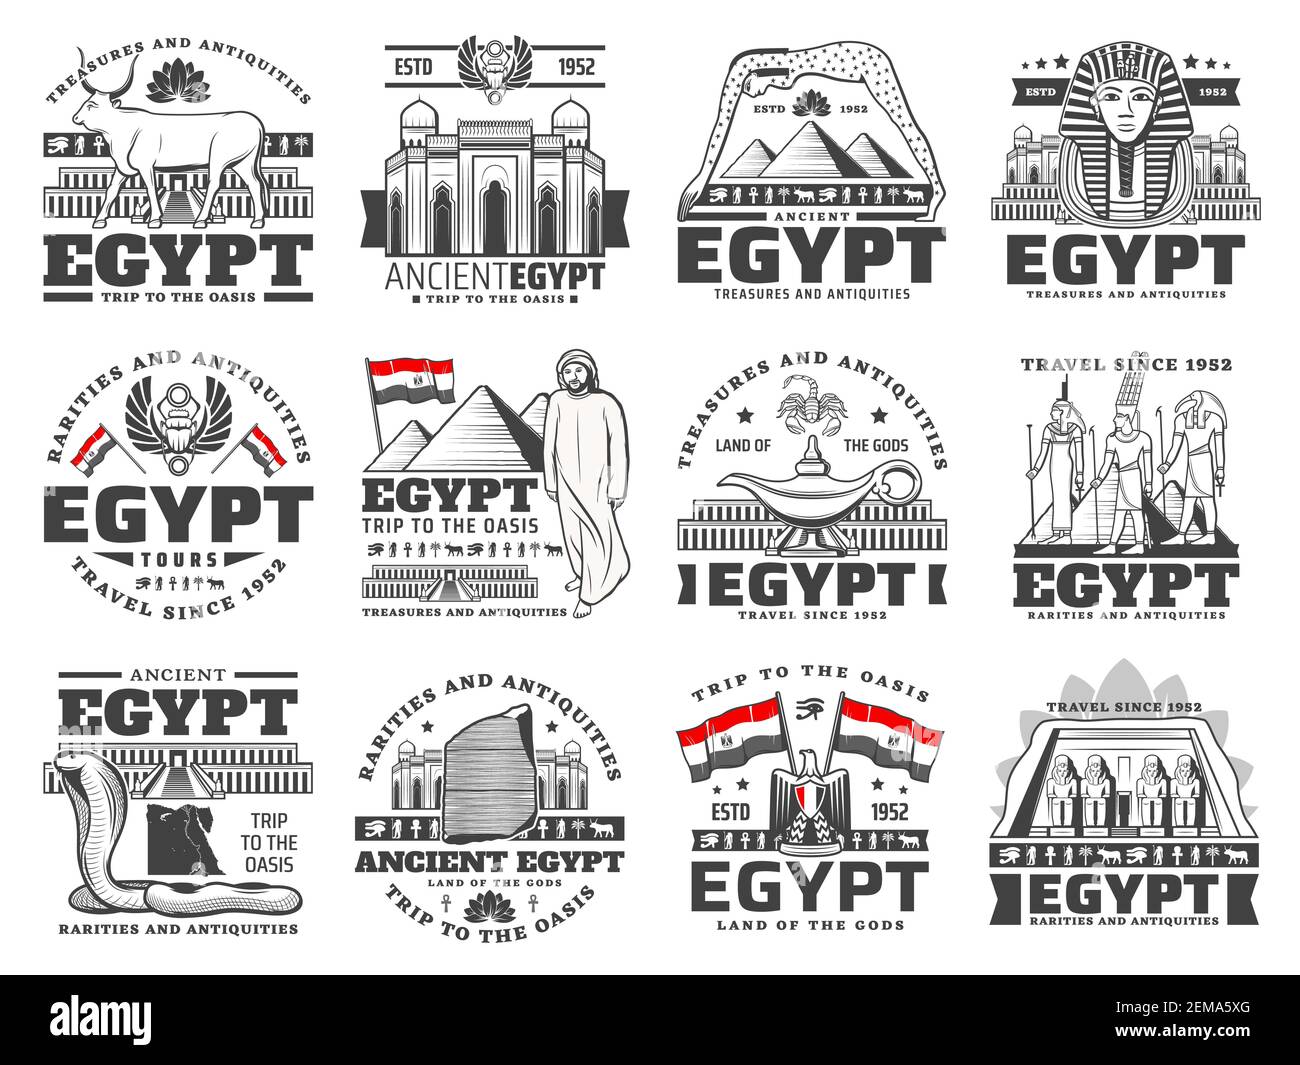 Ägypten Vektor-Ikonen der Kultur, der Geschichte, der Religion und der Reise. Alte Ägypten pharao Pyramiden, Götter mit Auge des Horus und Ankh Symbole, Karte, Flagge, Heral Stock Vektor